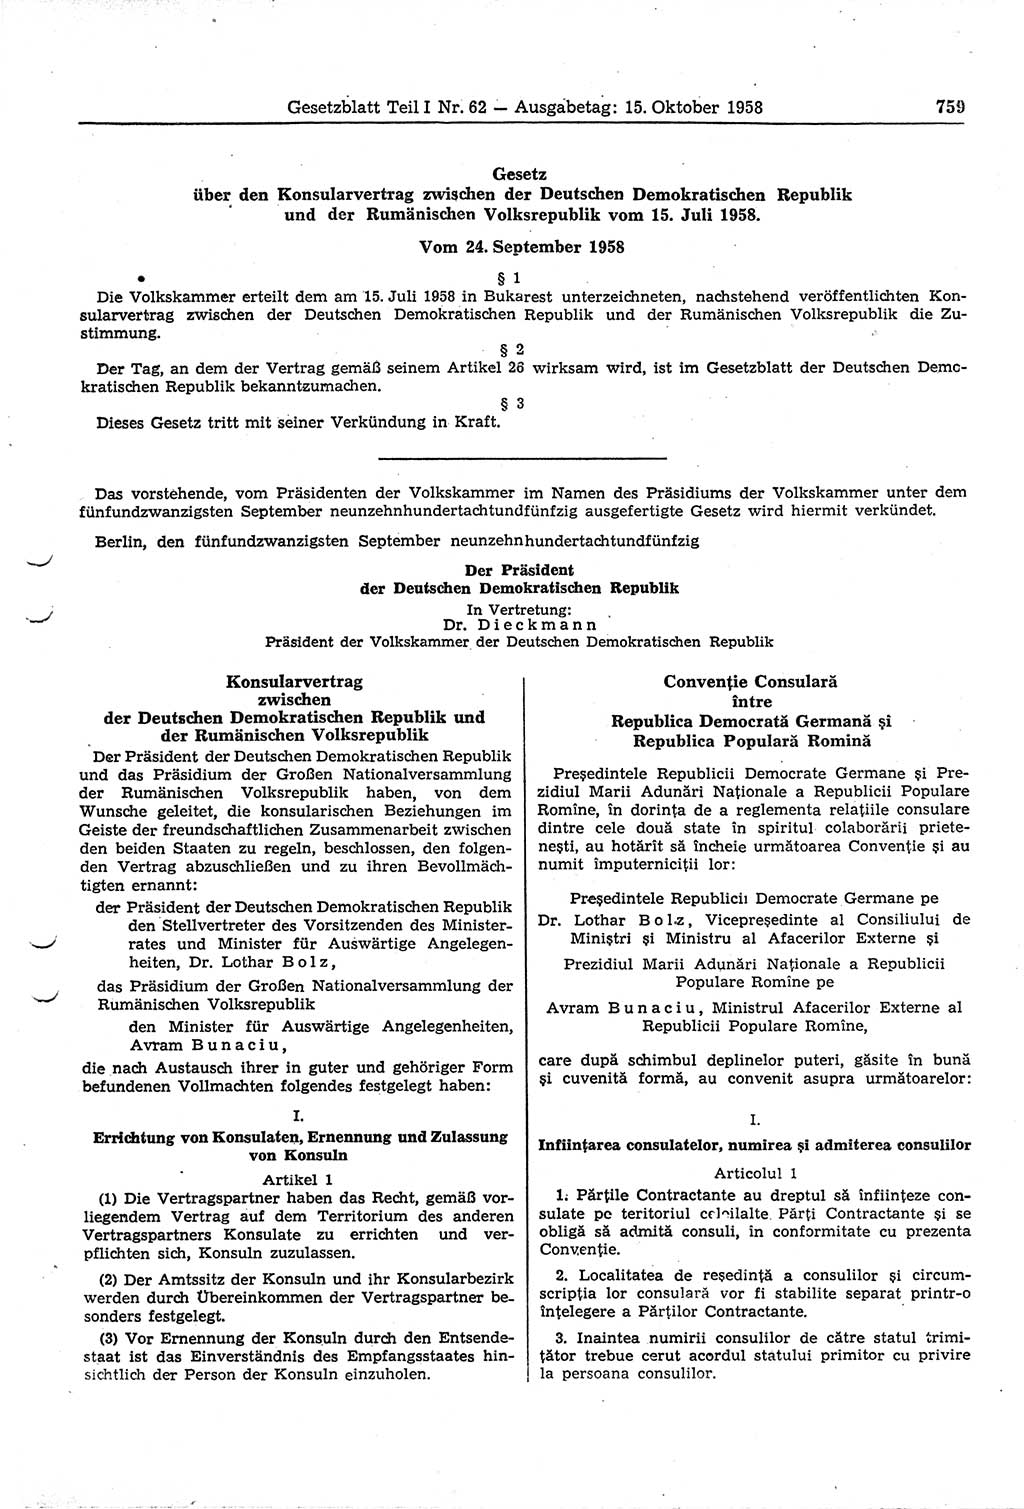 Gesetzblatt (GBl.) der Deutschen Demokratischen Republik (DDR) Teil Ⅰ 1958, Seite 759 (GBl. DDR Ⅰ 1958, S. 759)